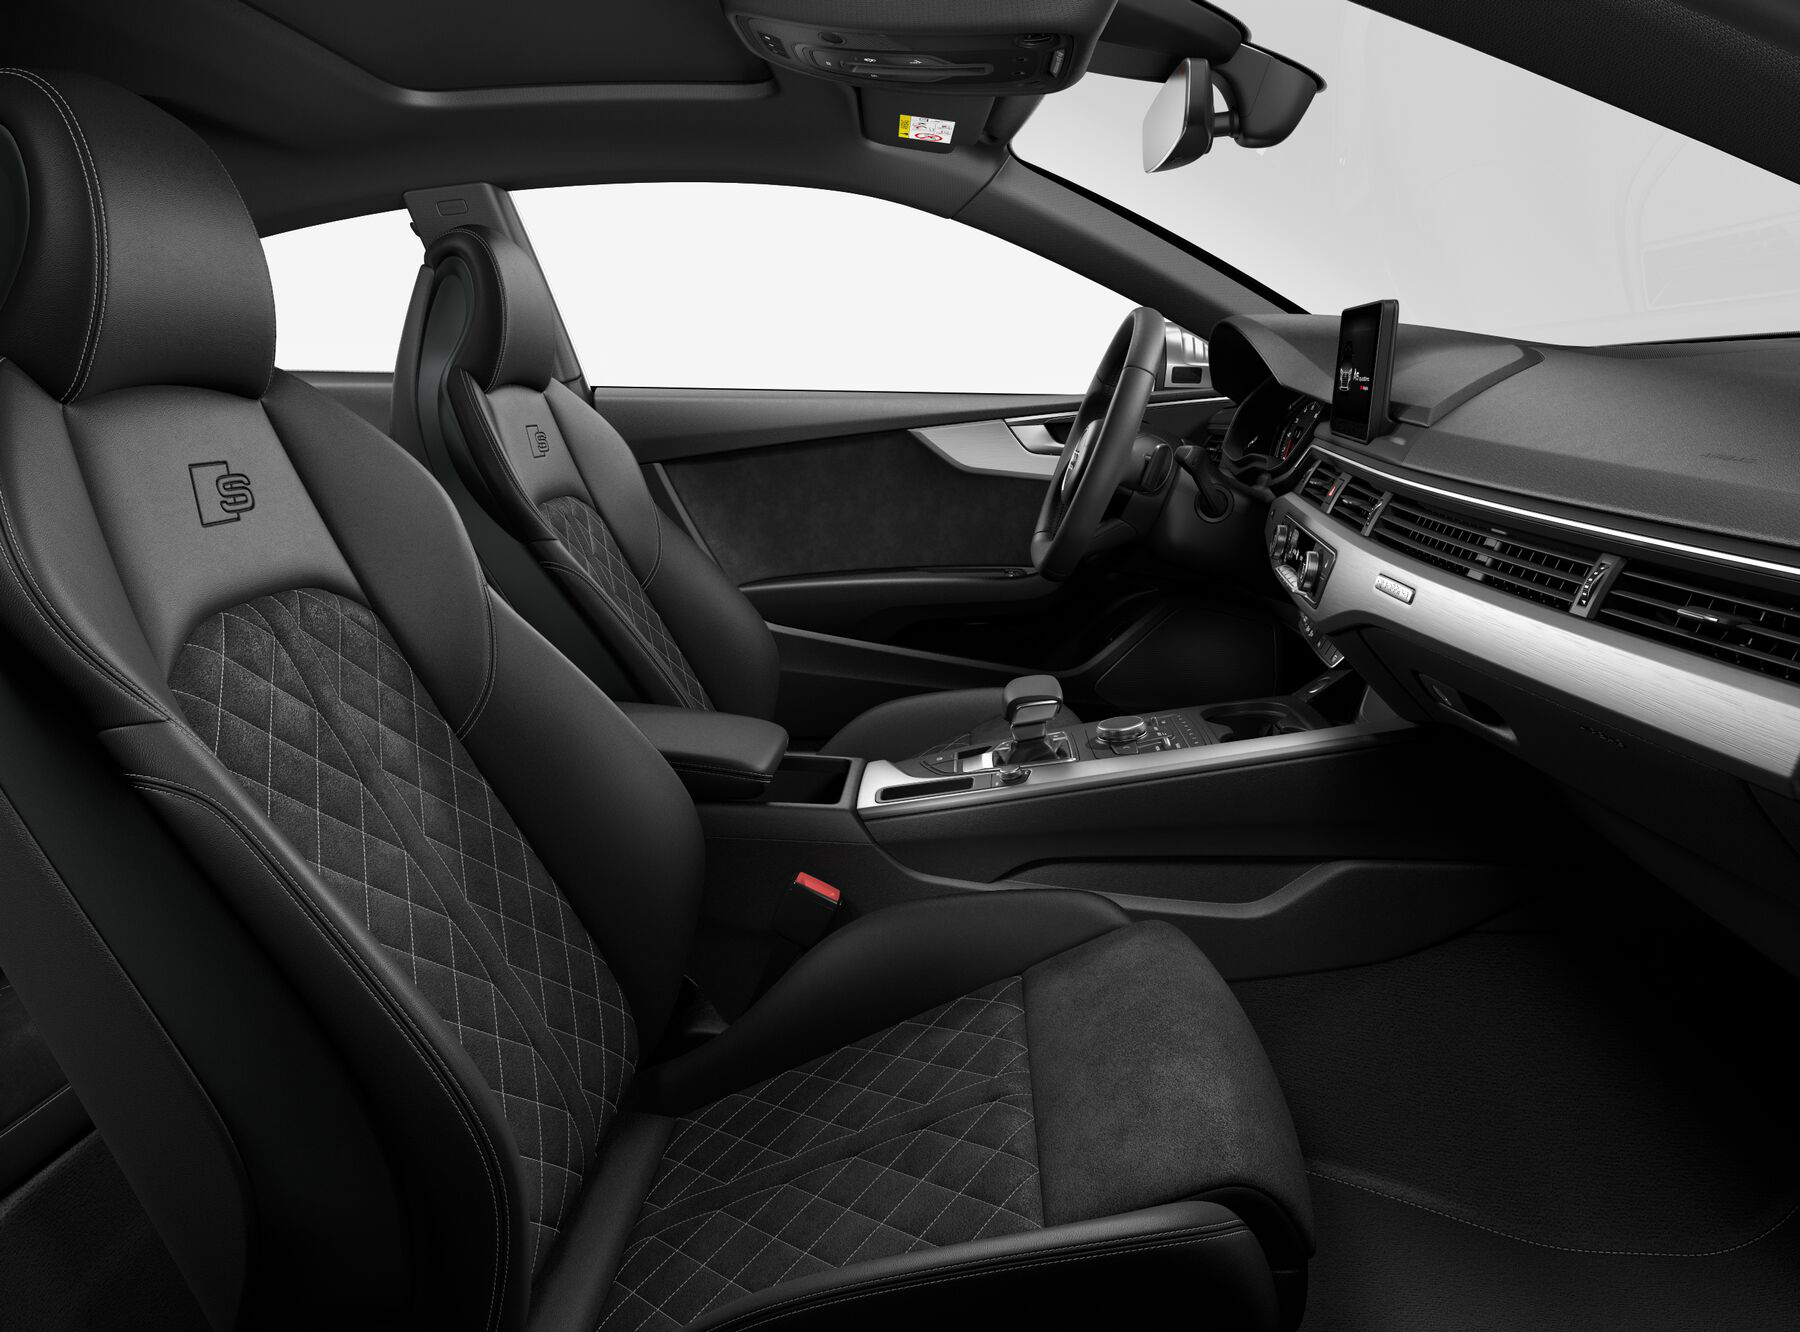 Audi S5 Prestige interior front seat view